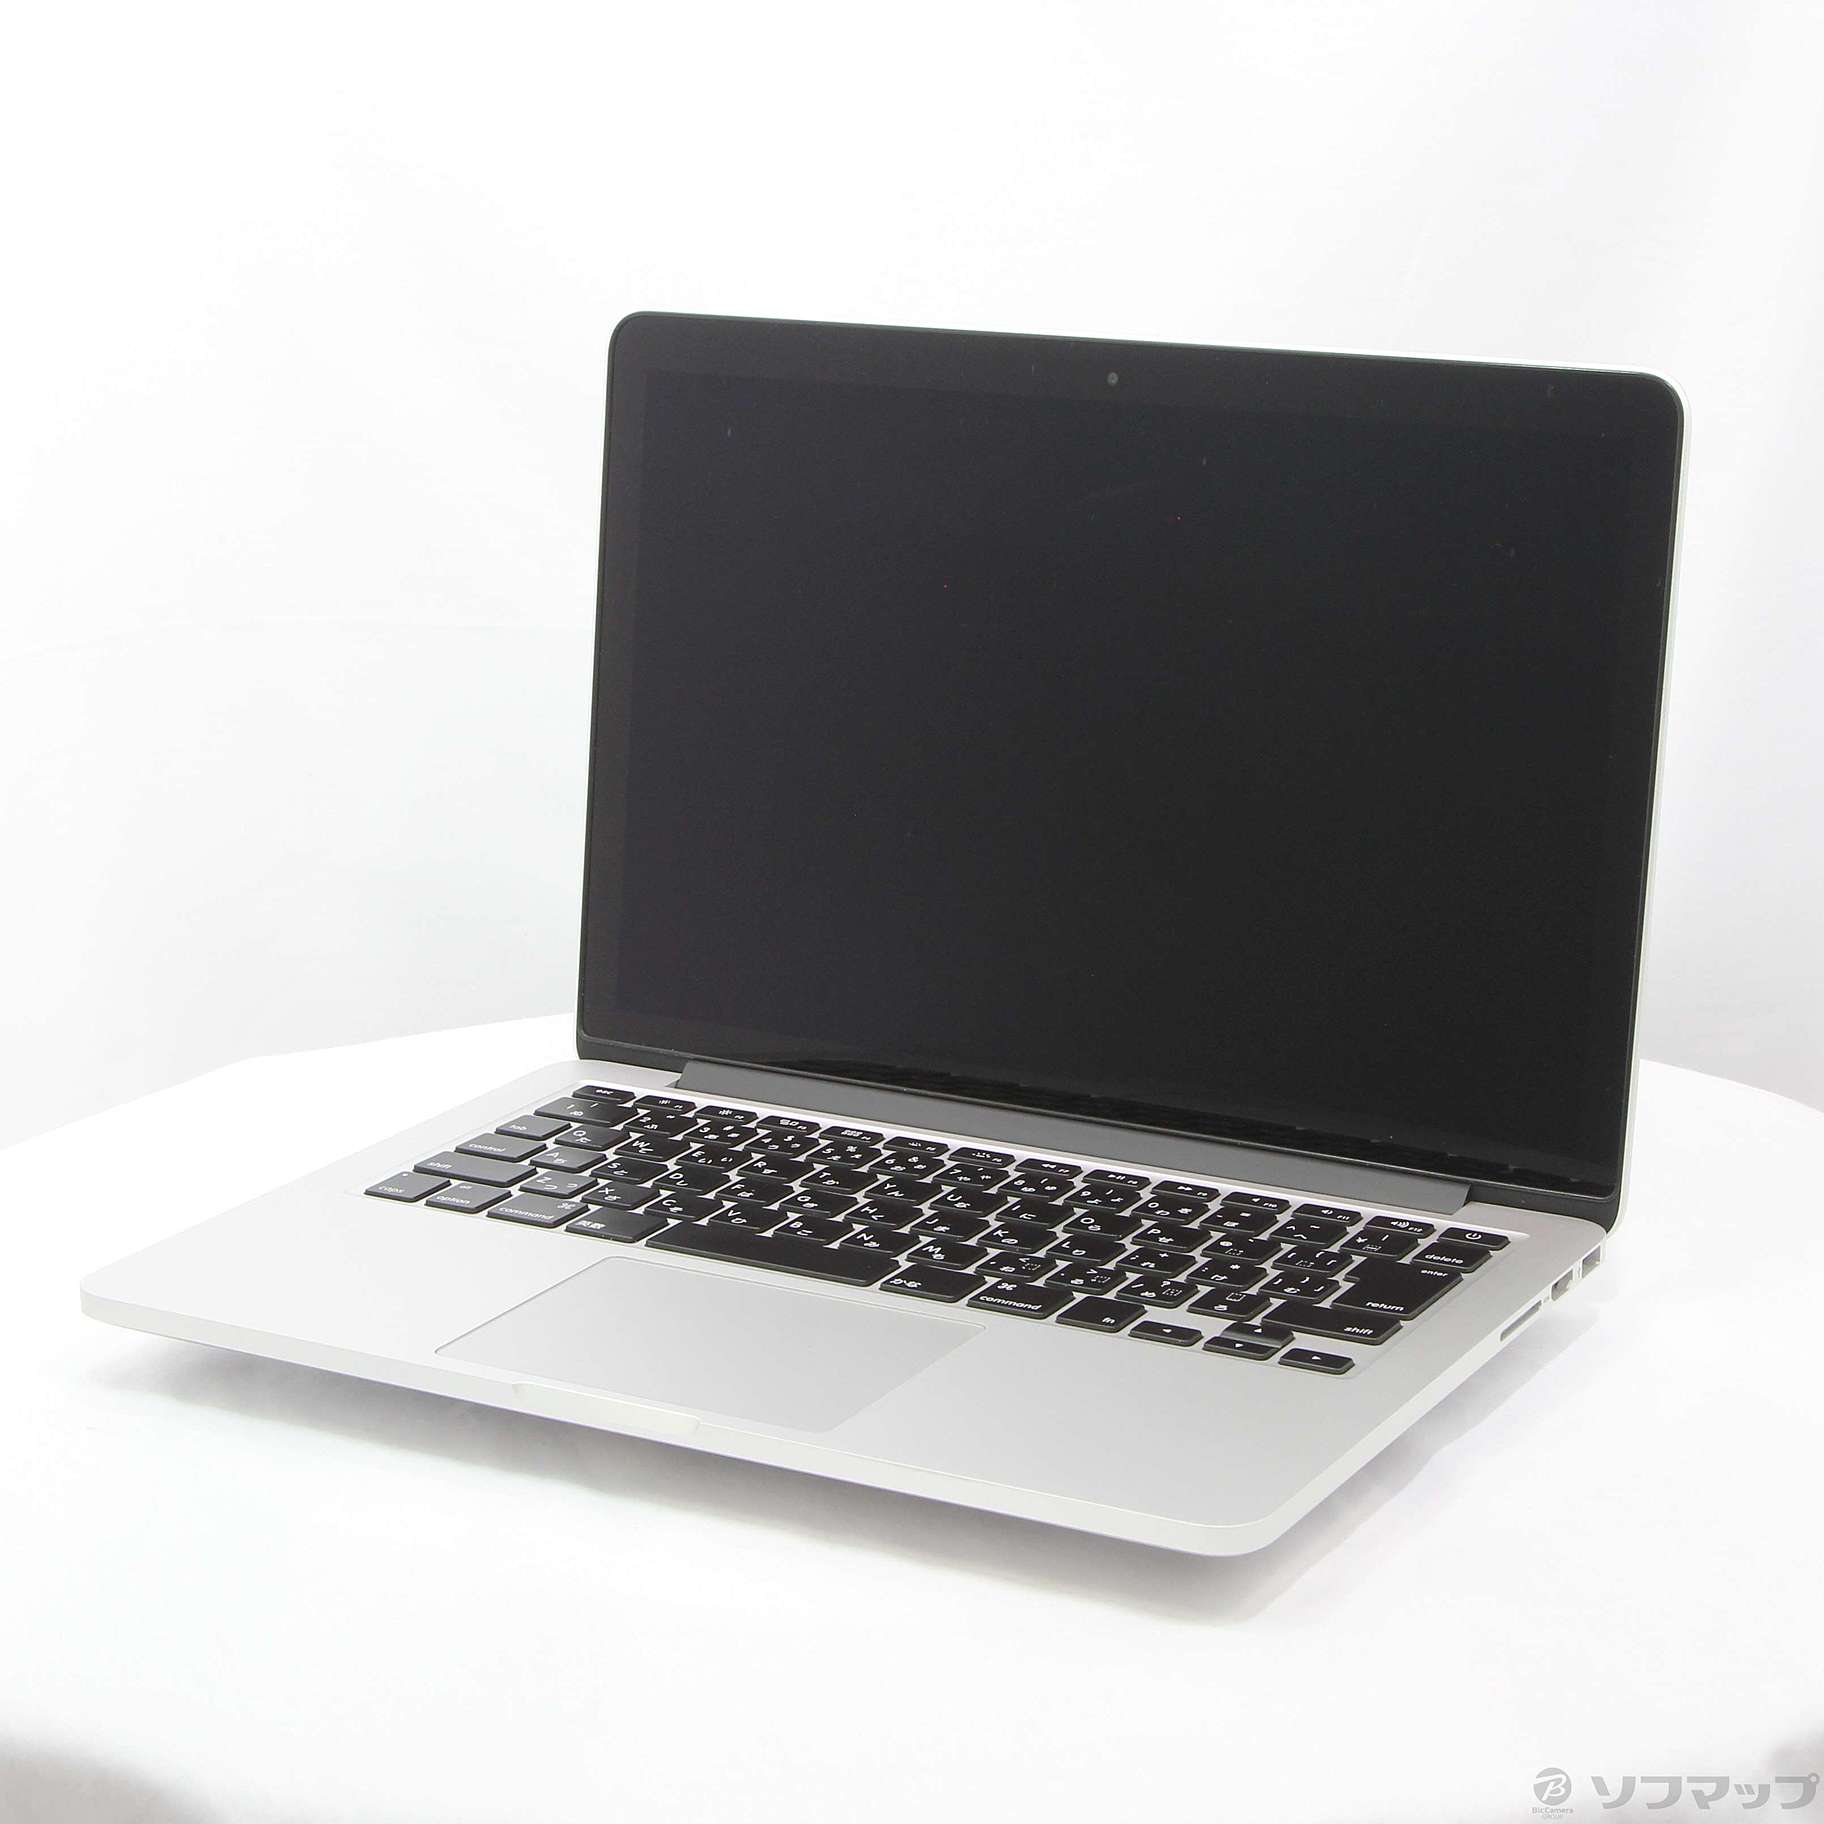 お好きなOSに変更しますMacBook Pro (Retina 13-inch